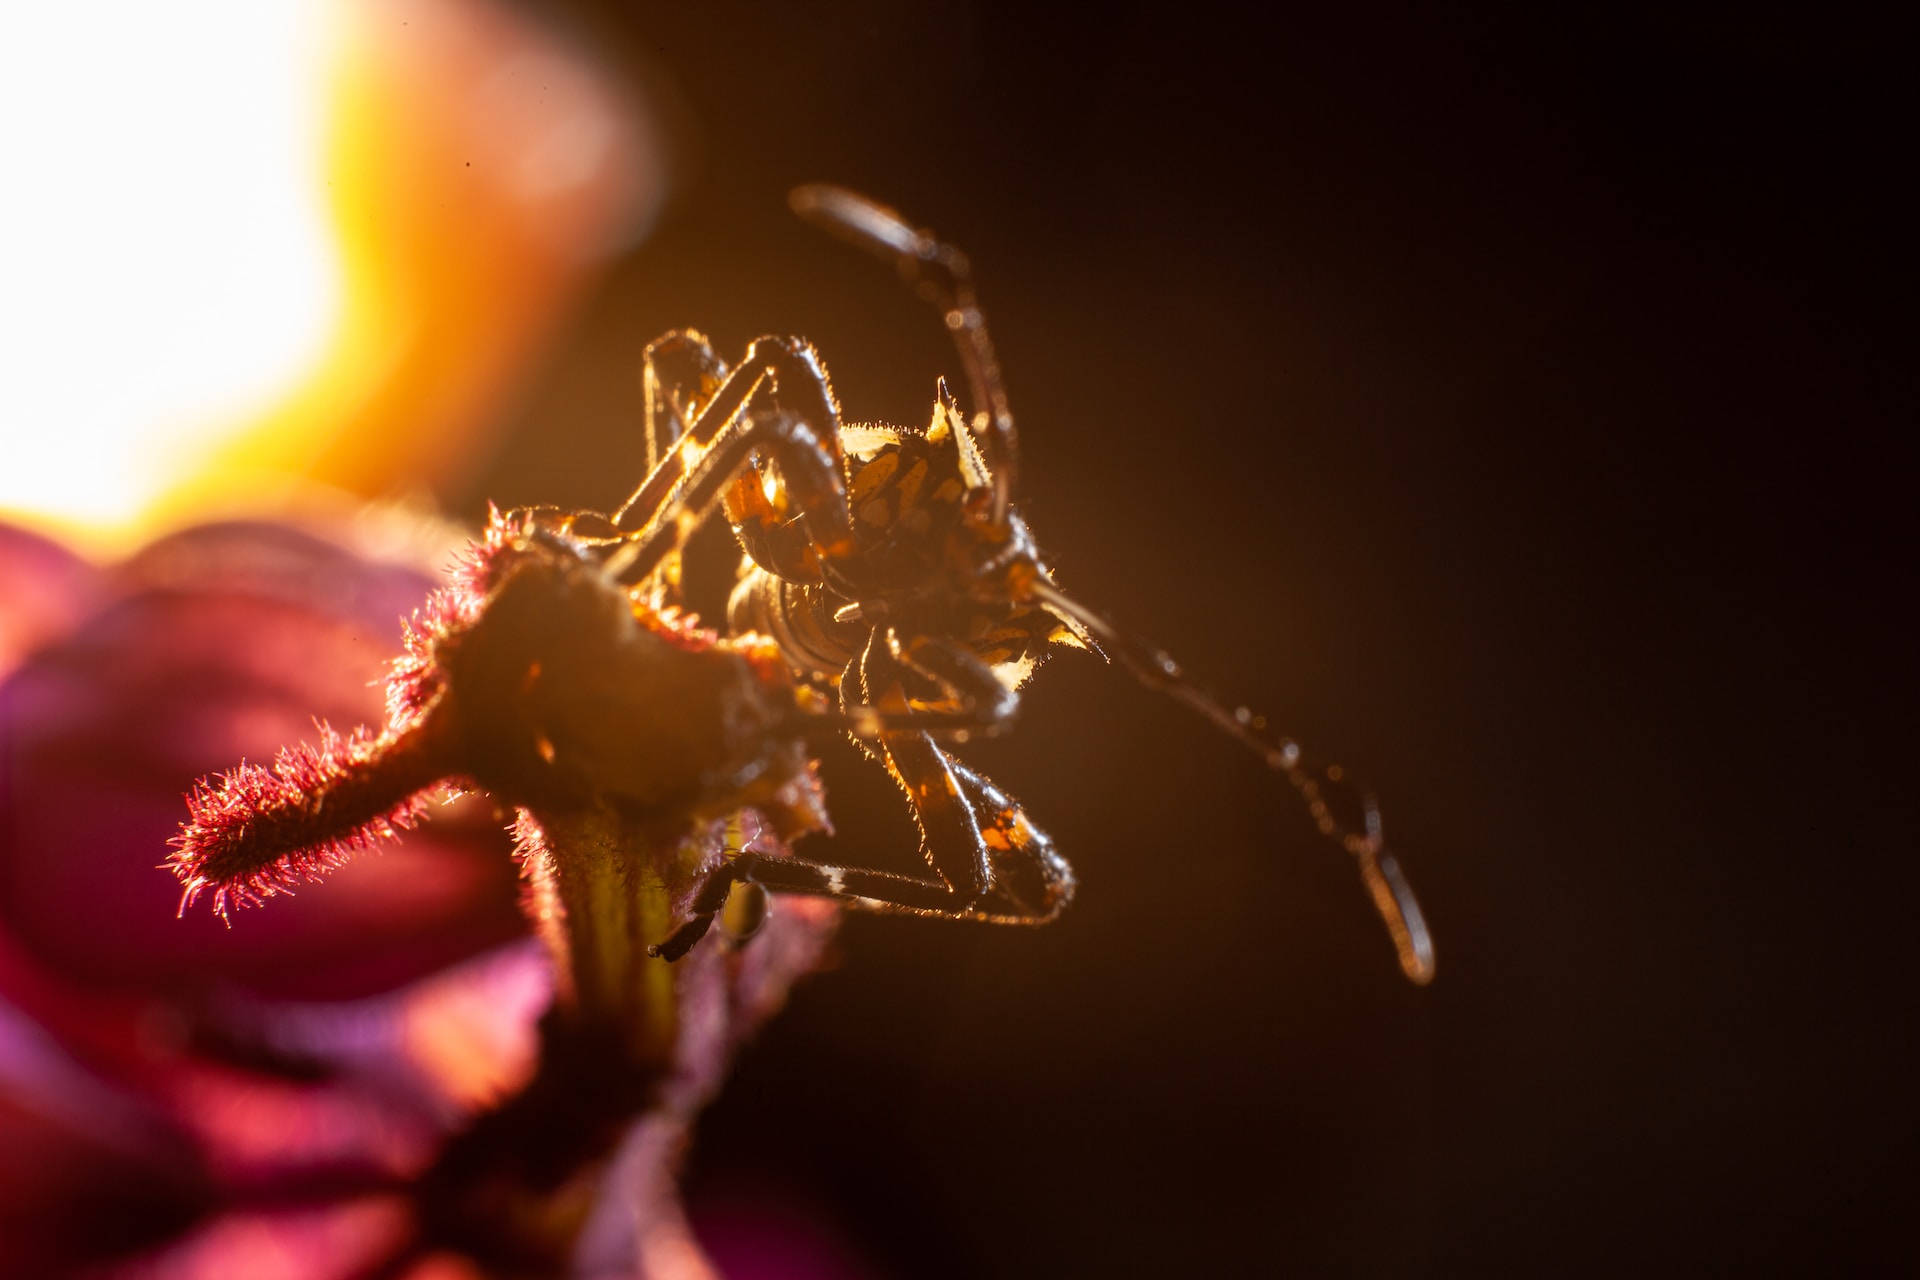 Wespen verjagen via insectenlamp